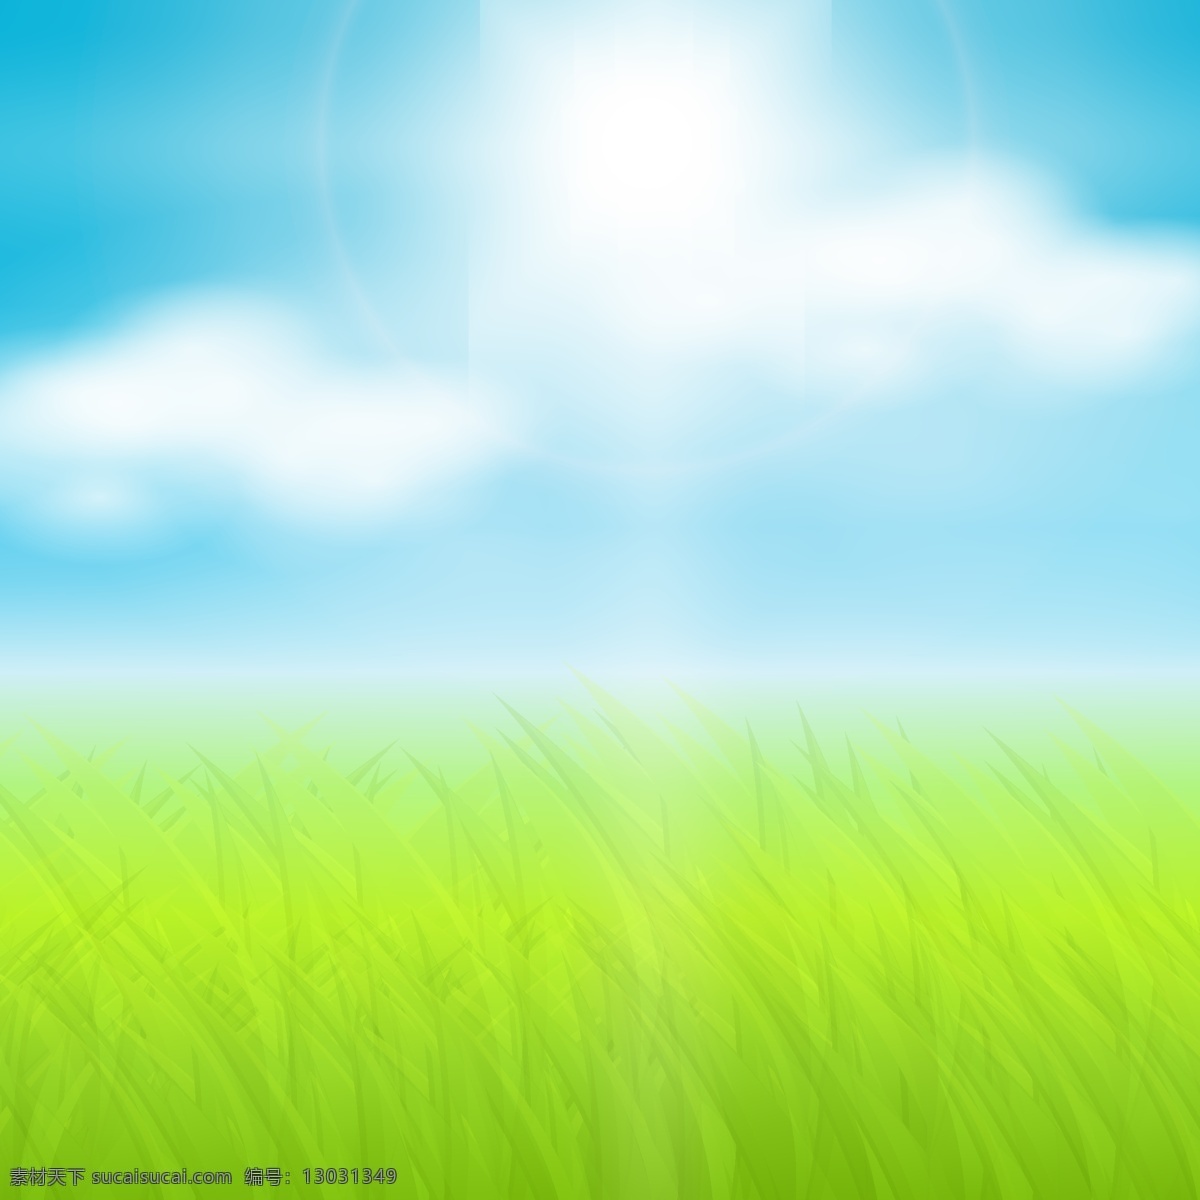 明媚阳光草地 草地 阳光 草原 风景 云朵 光纤 插画 背景 天空 矢量图 自然风景 自然景观 矢量